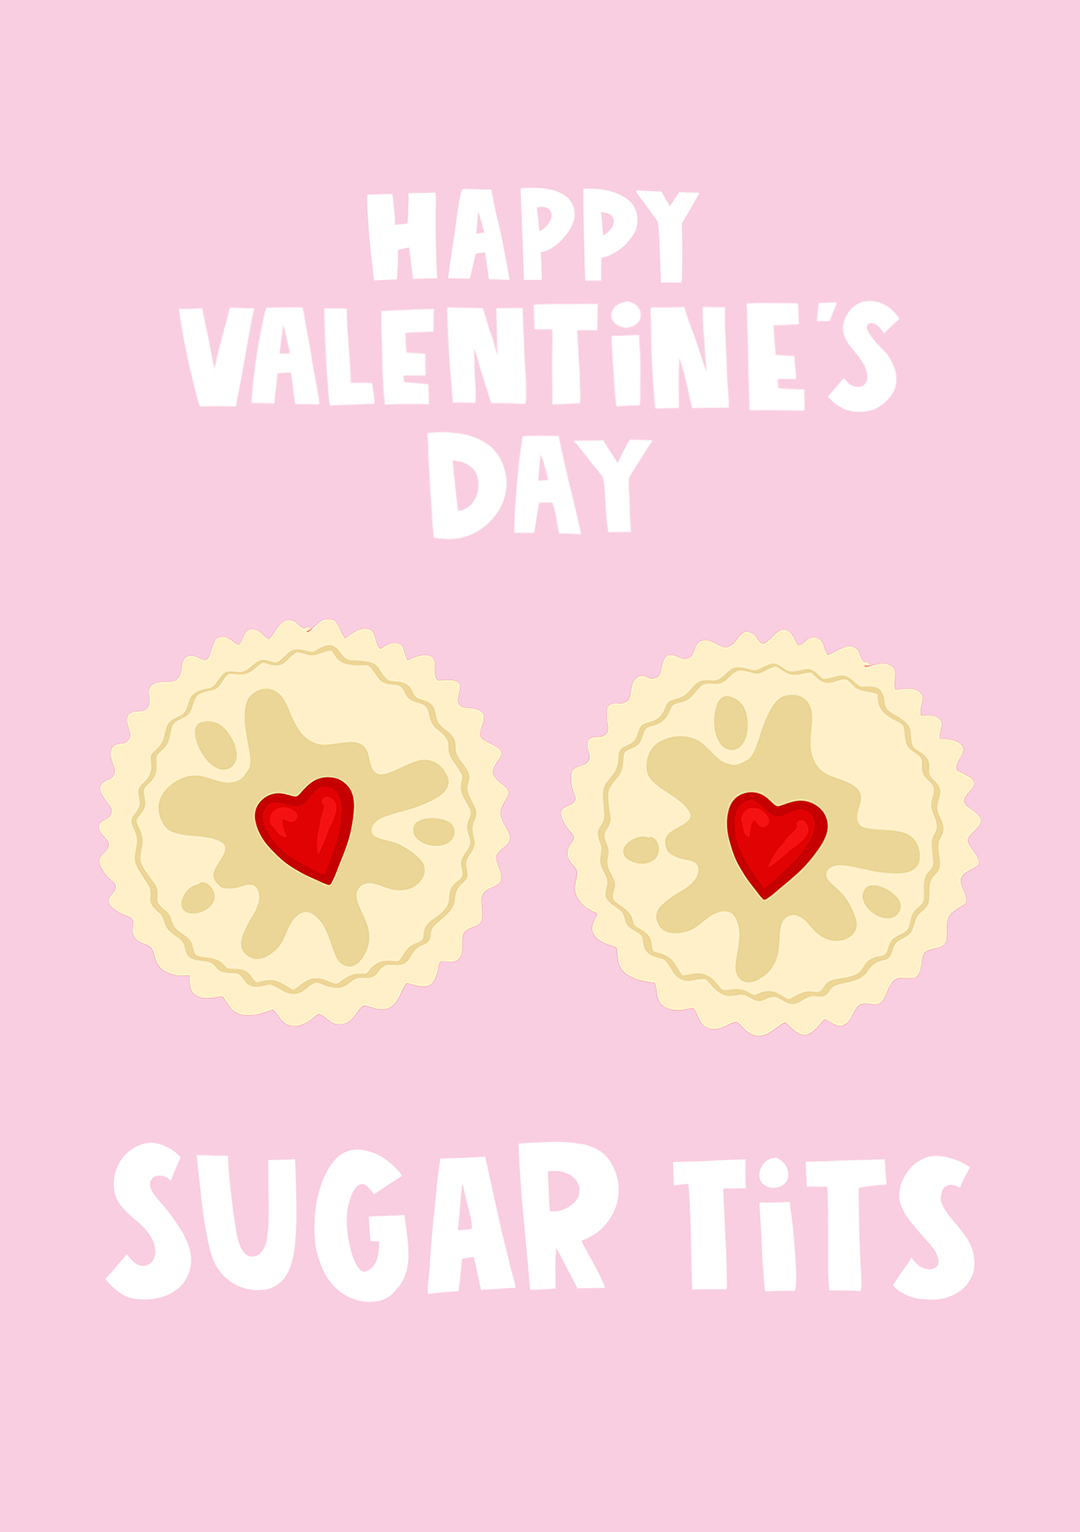 Sugar T*** Valentine's Day Card